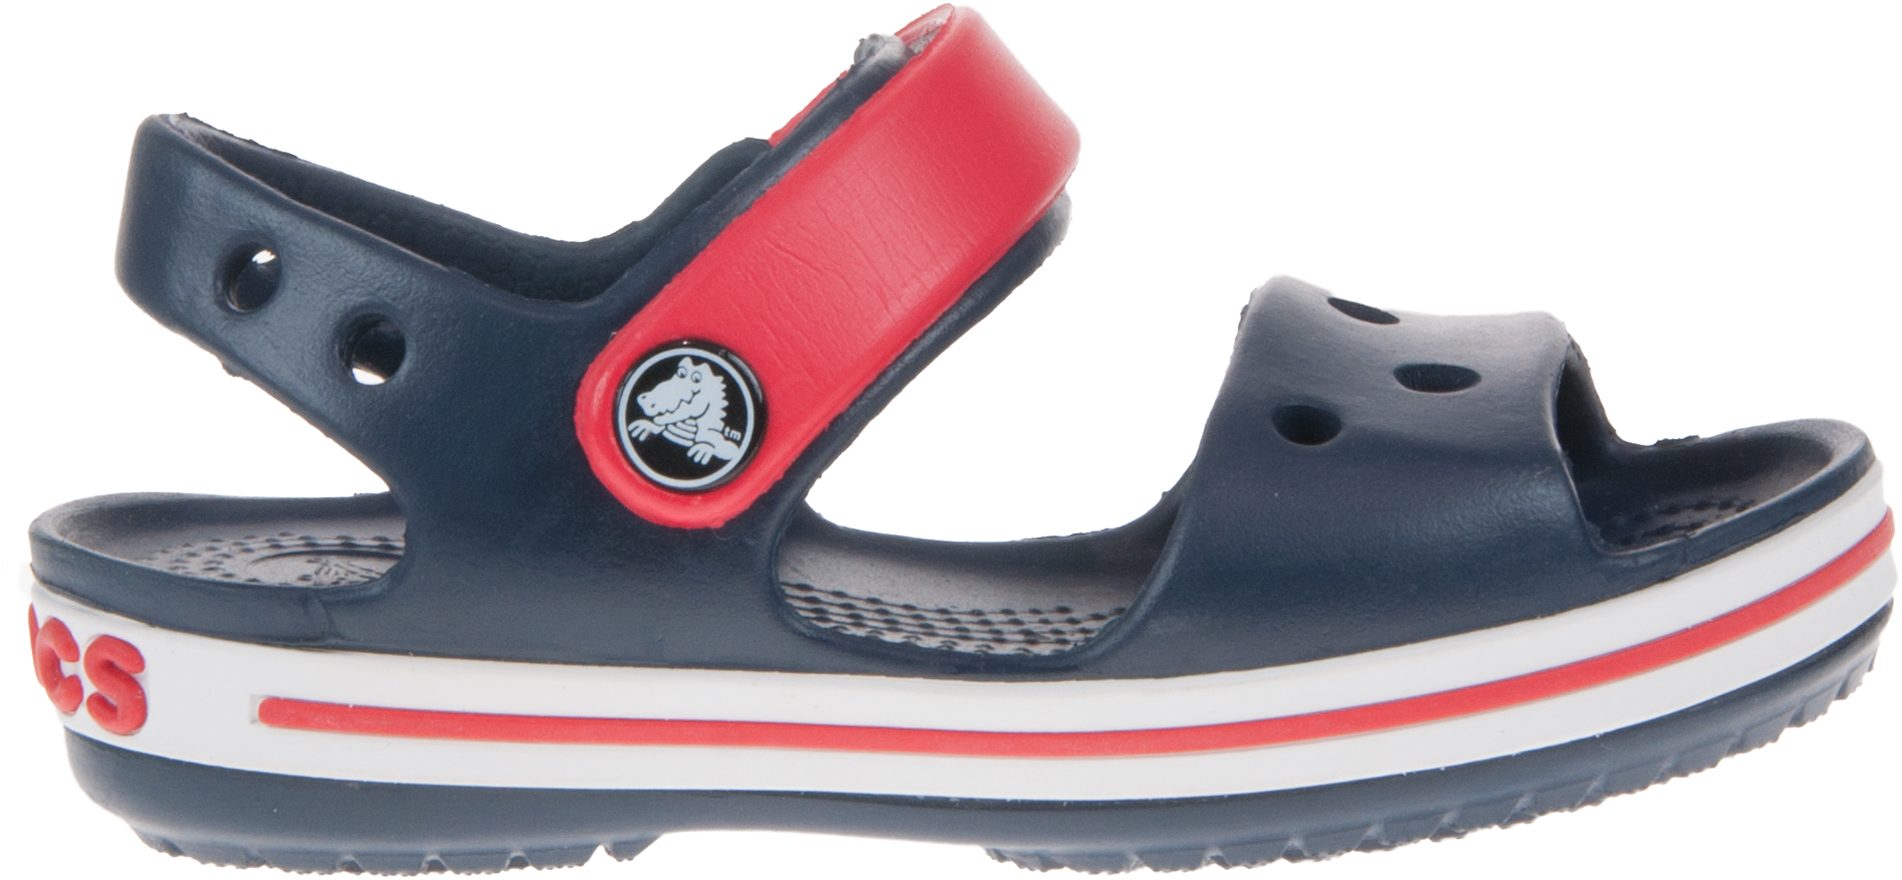 Crocs Crocband Sandal Kids Navy / Red 12856-485 - Boys Sandals ...